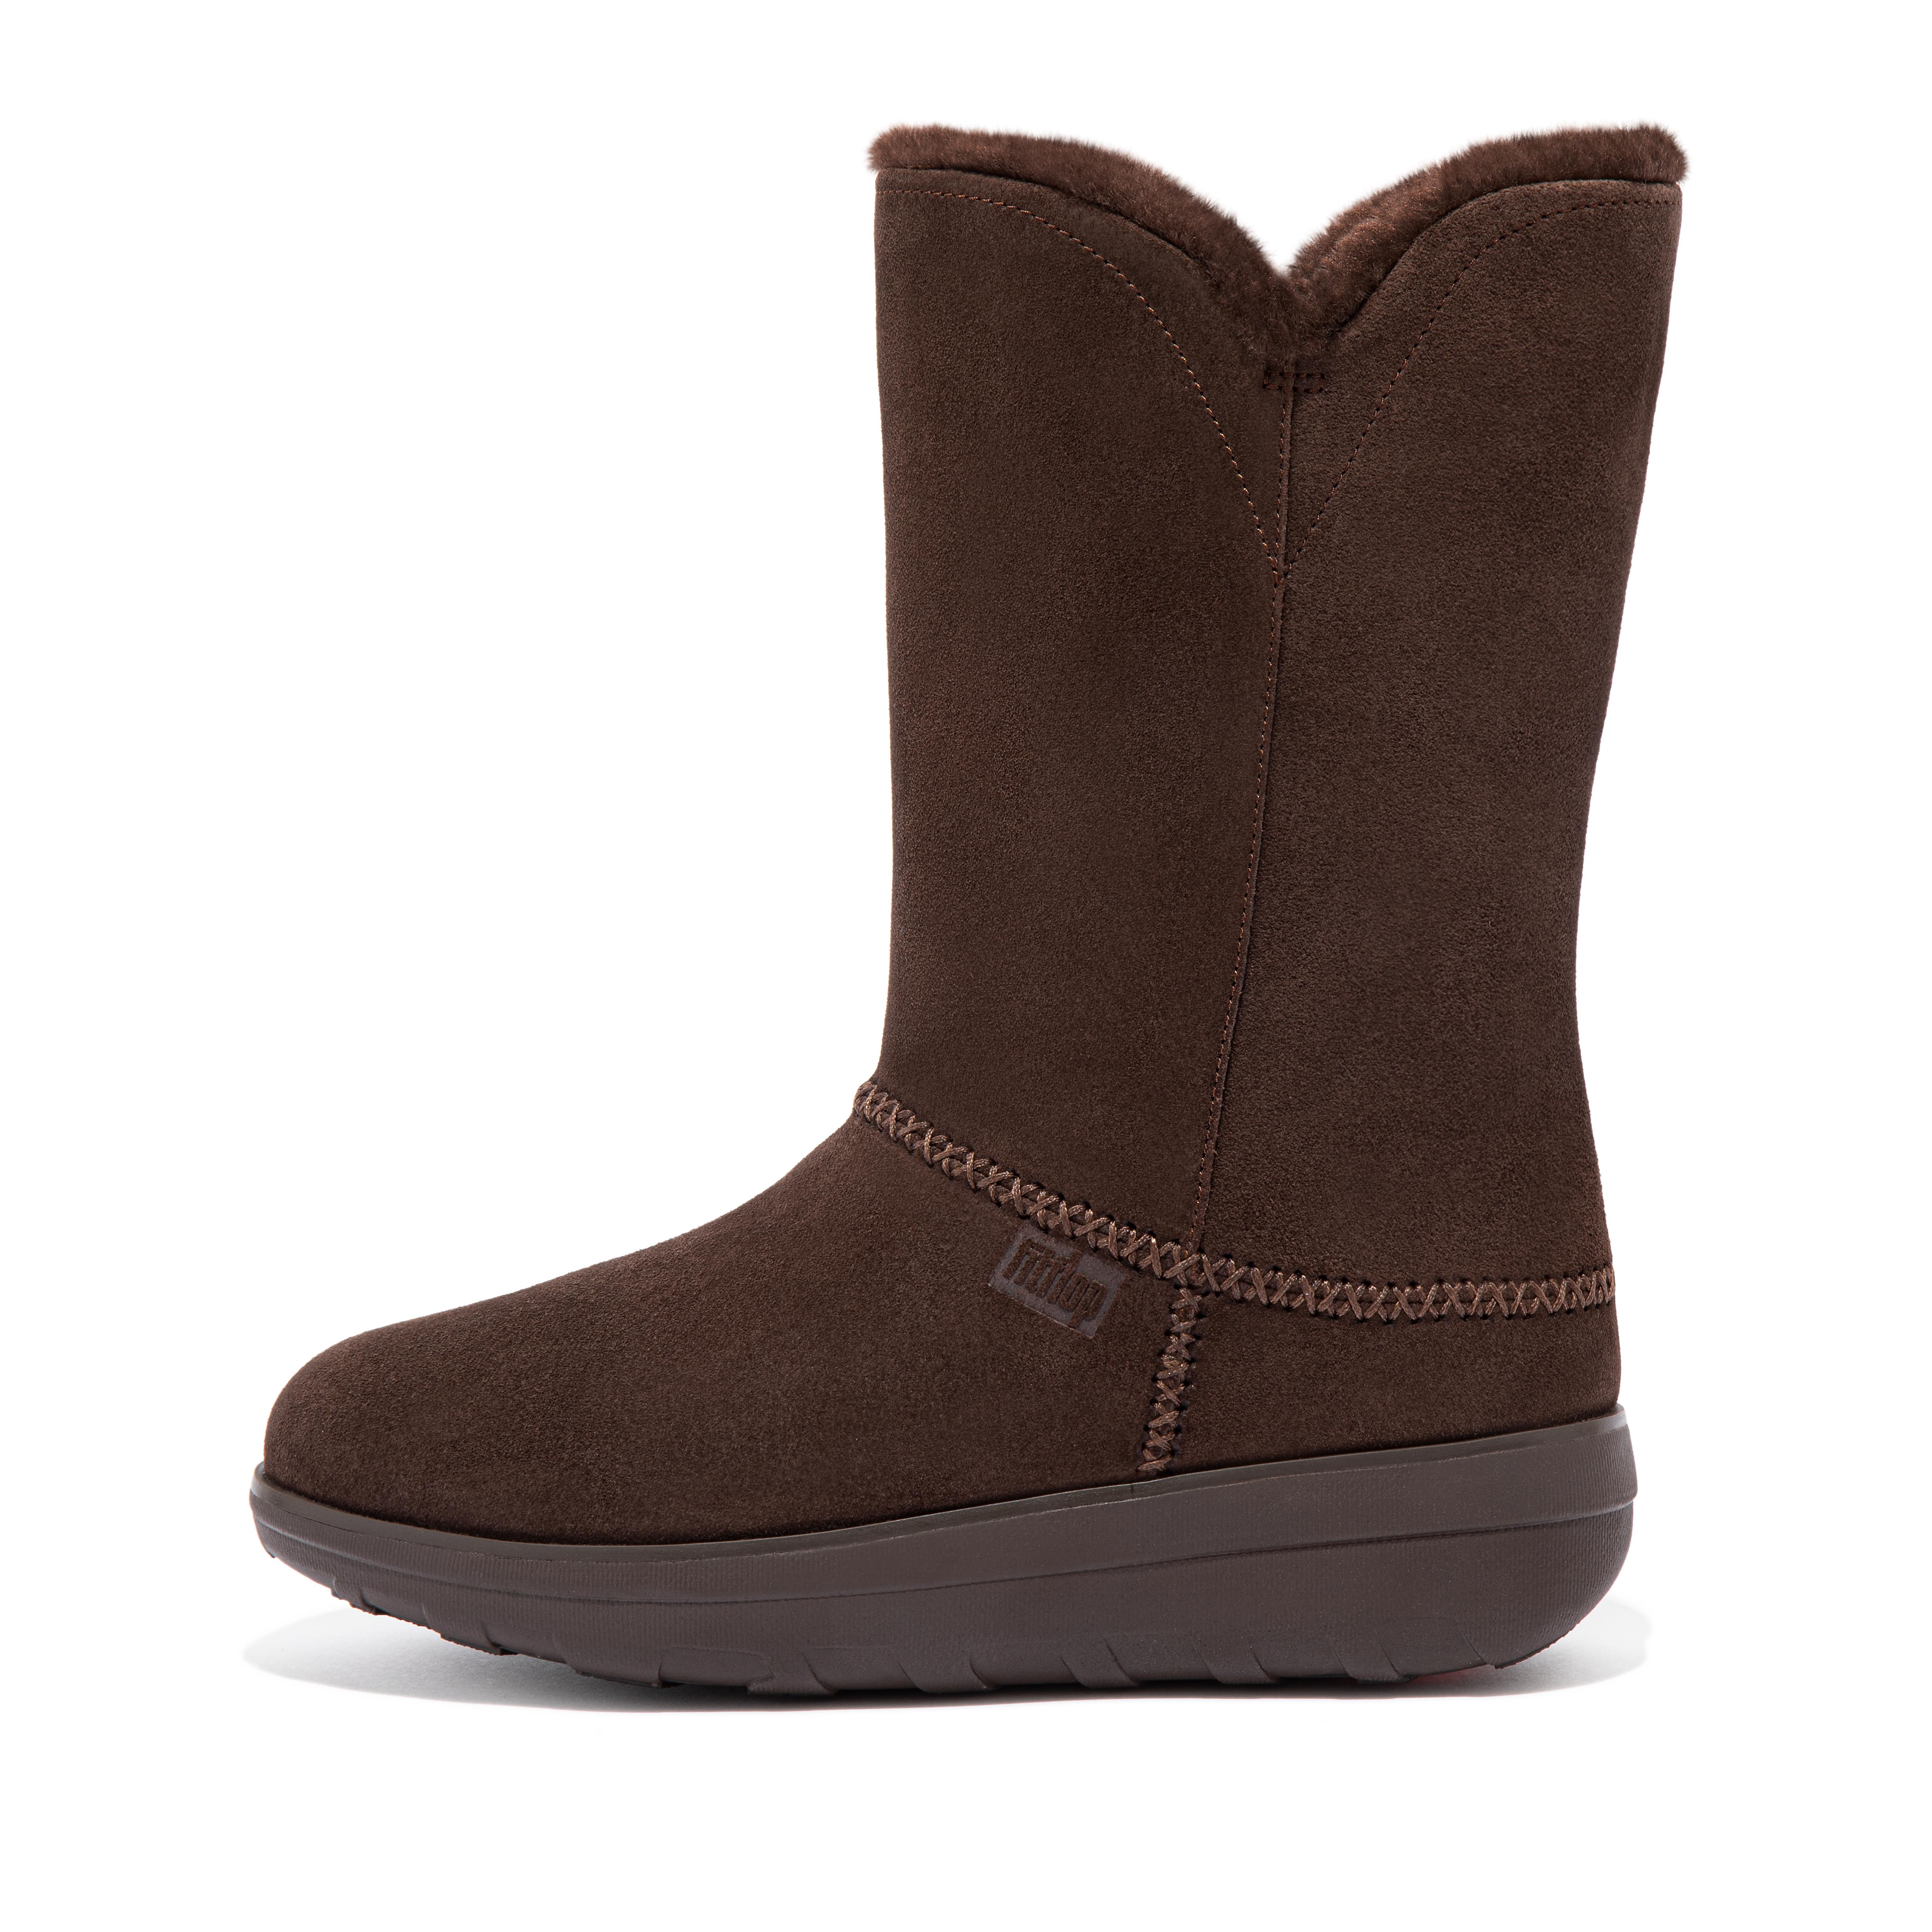 핏플랍 FitFlop MUKLUK Shearling-Lined Suede Calf Boots,Chocolate Brown